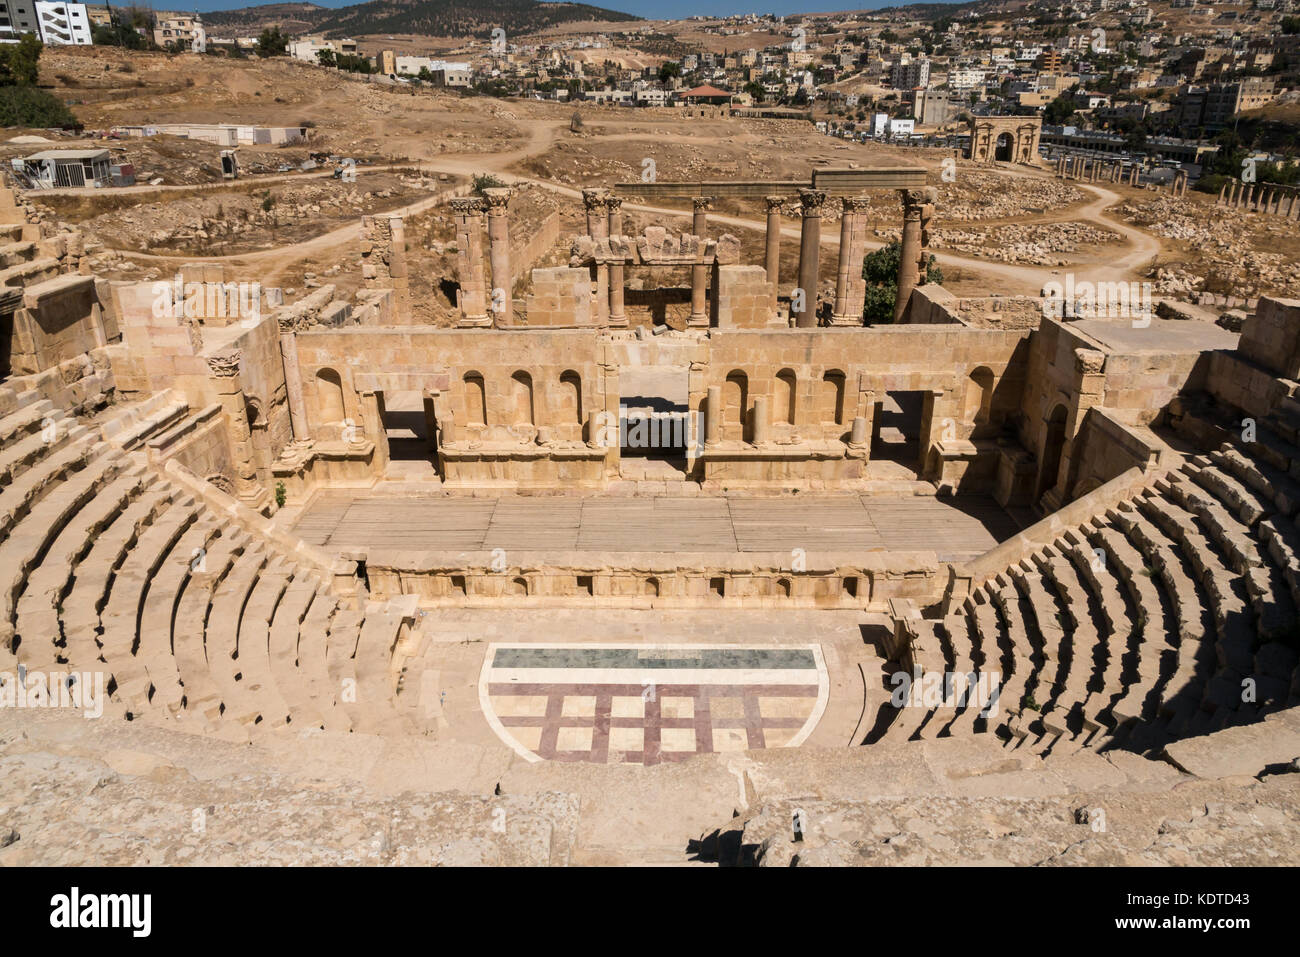 Vista dalla cima del Nord Teatro anfiteatro, città romana di Jerash, antica Gerasa, sito archeologico nel nord della Giordania, Medio Oriente Foto Stock